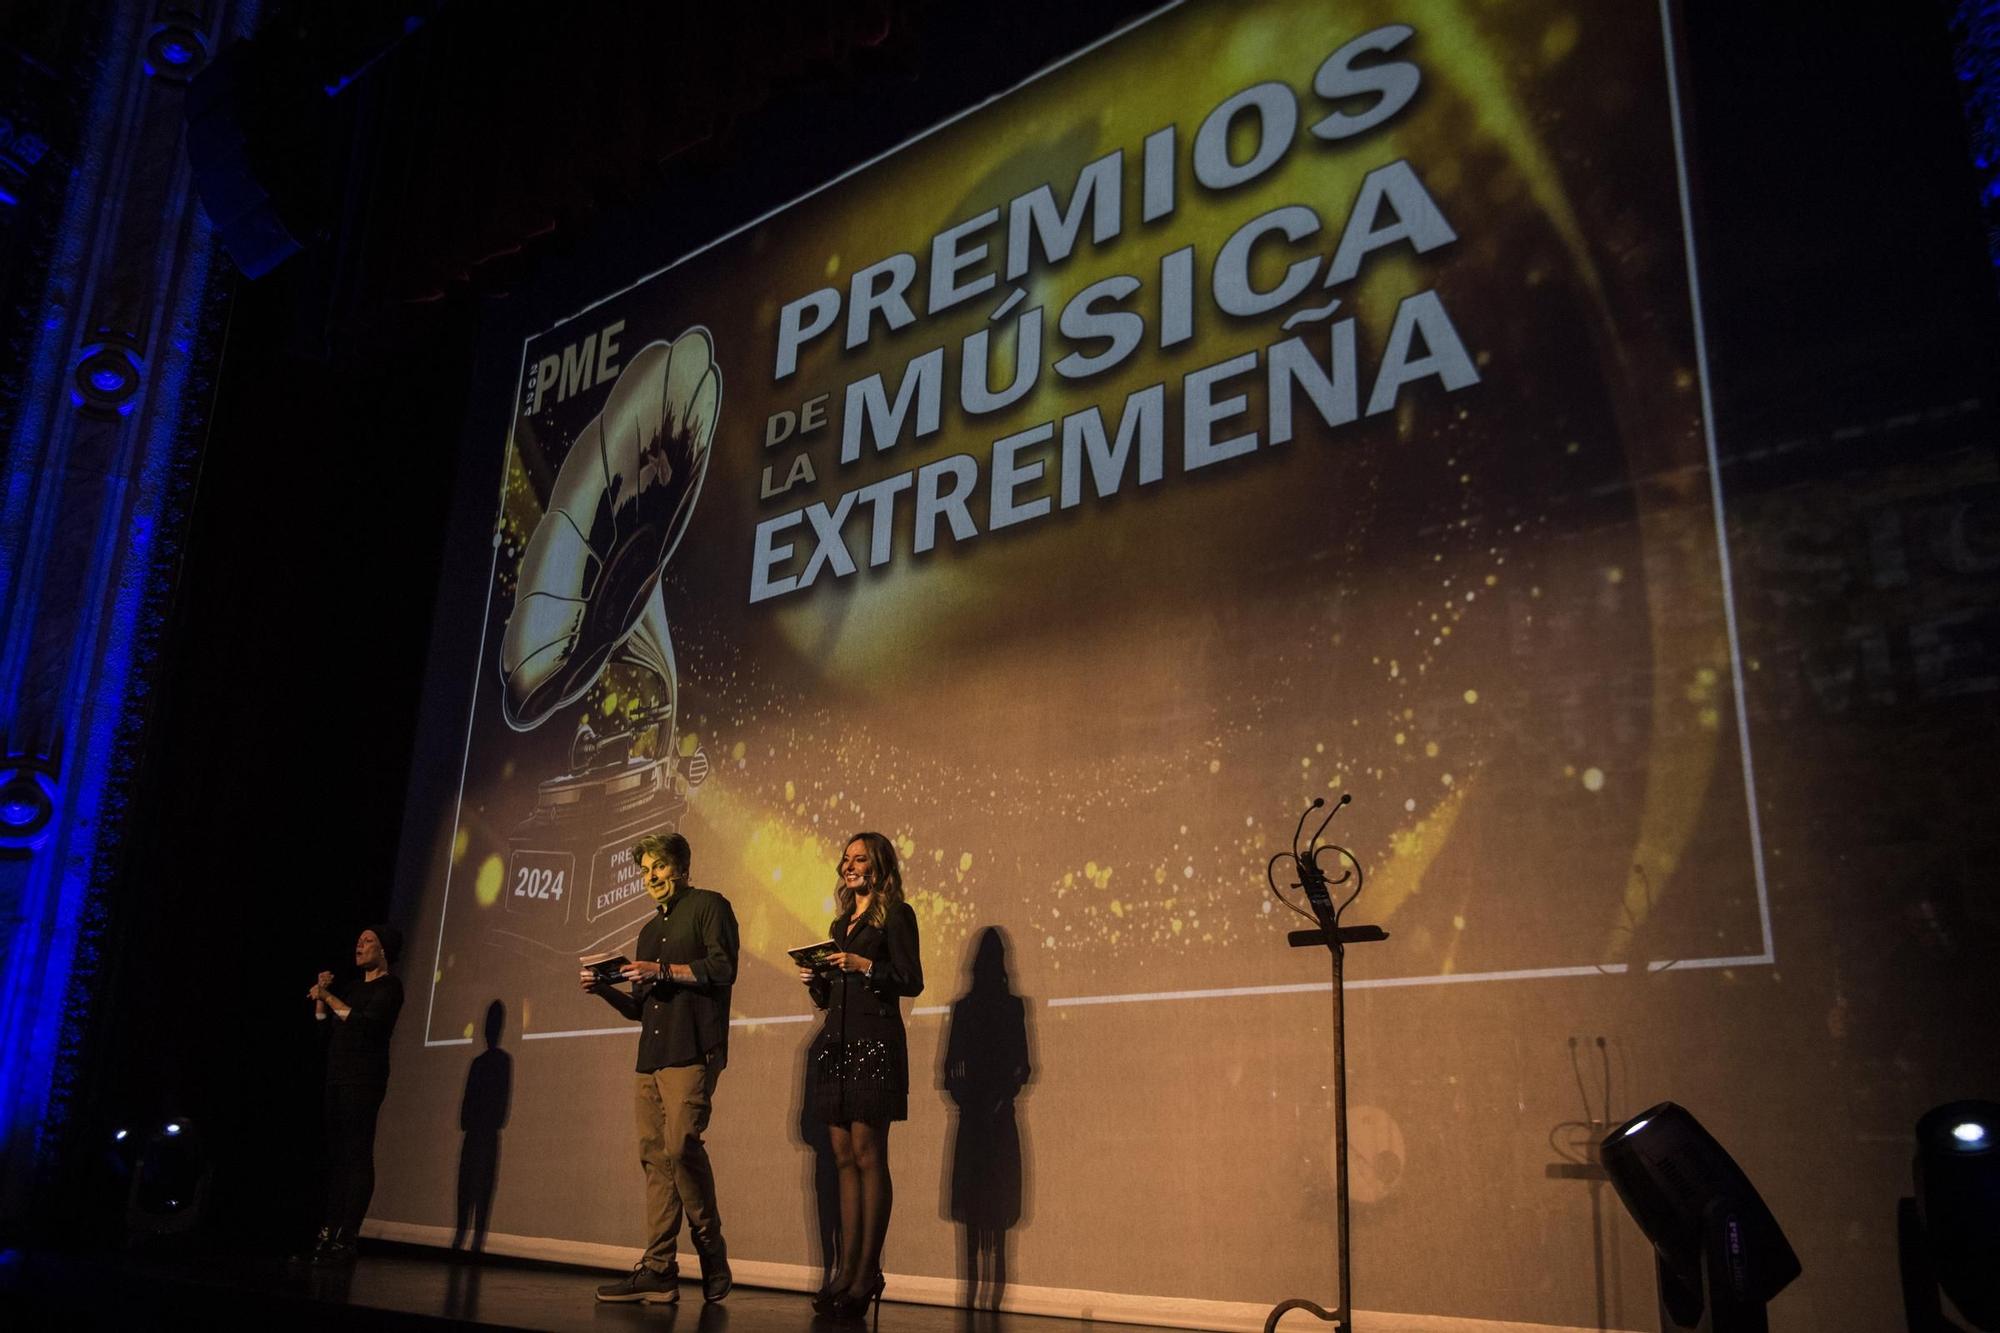 Galería | Robe triunfa en Cáceres en la fiesta de la música extremeña